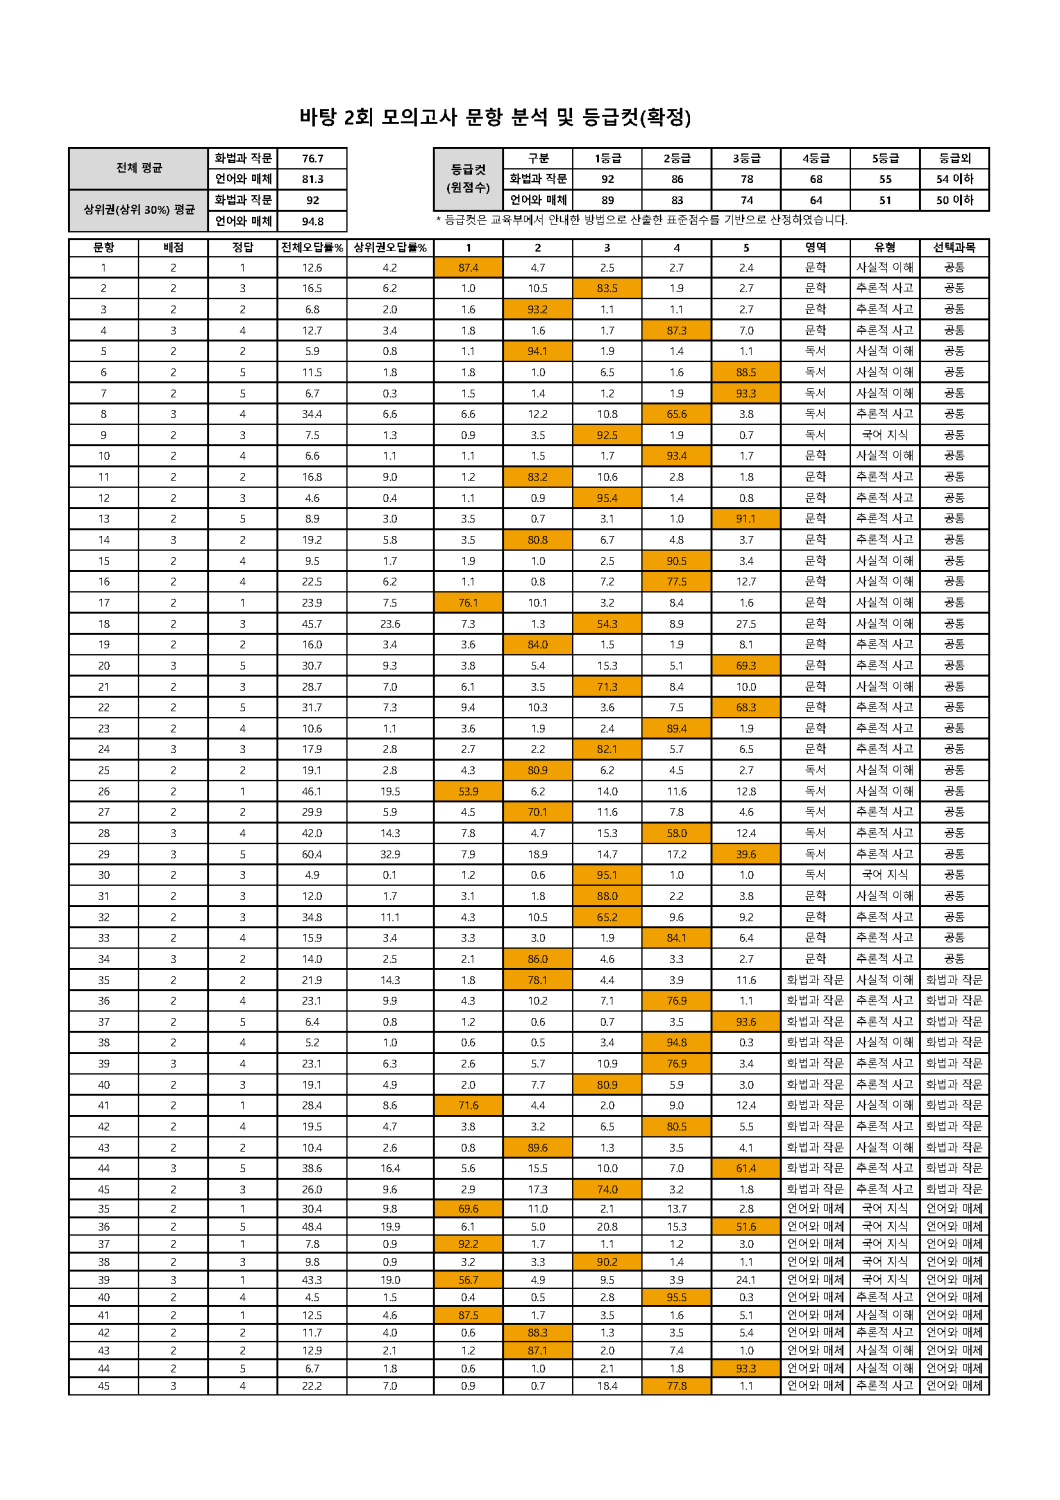 2022학년도 바탕 문항분석표 및 등급컷(1회~10회)_페이지_02.png